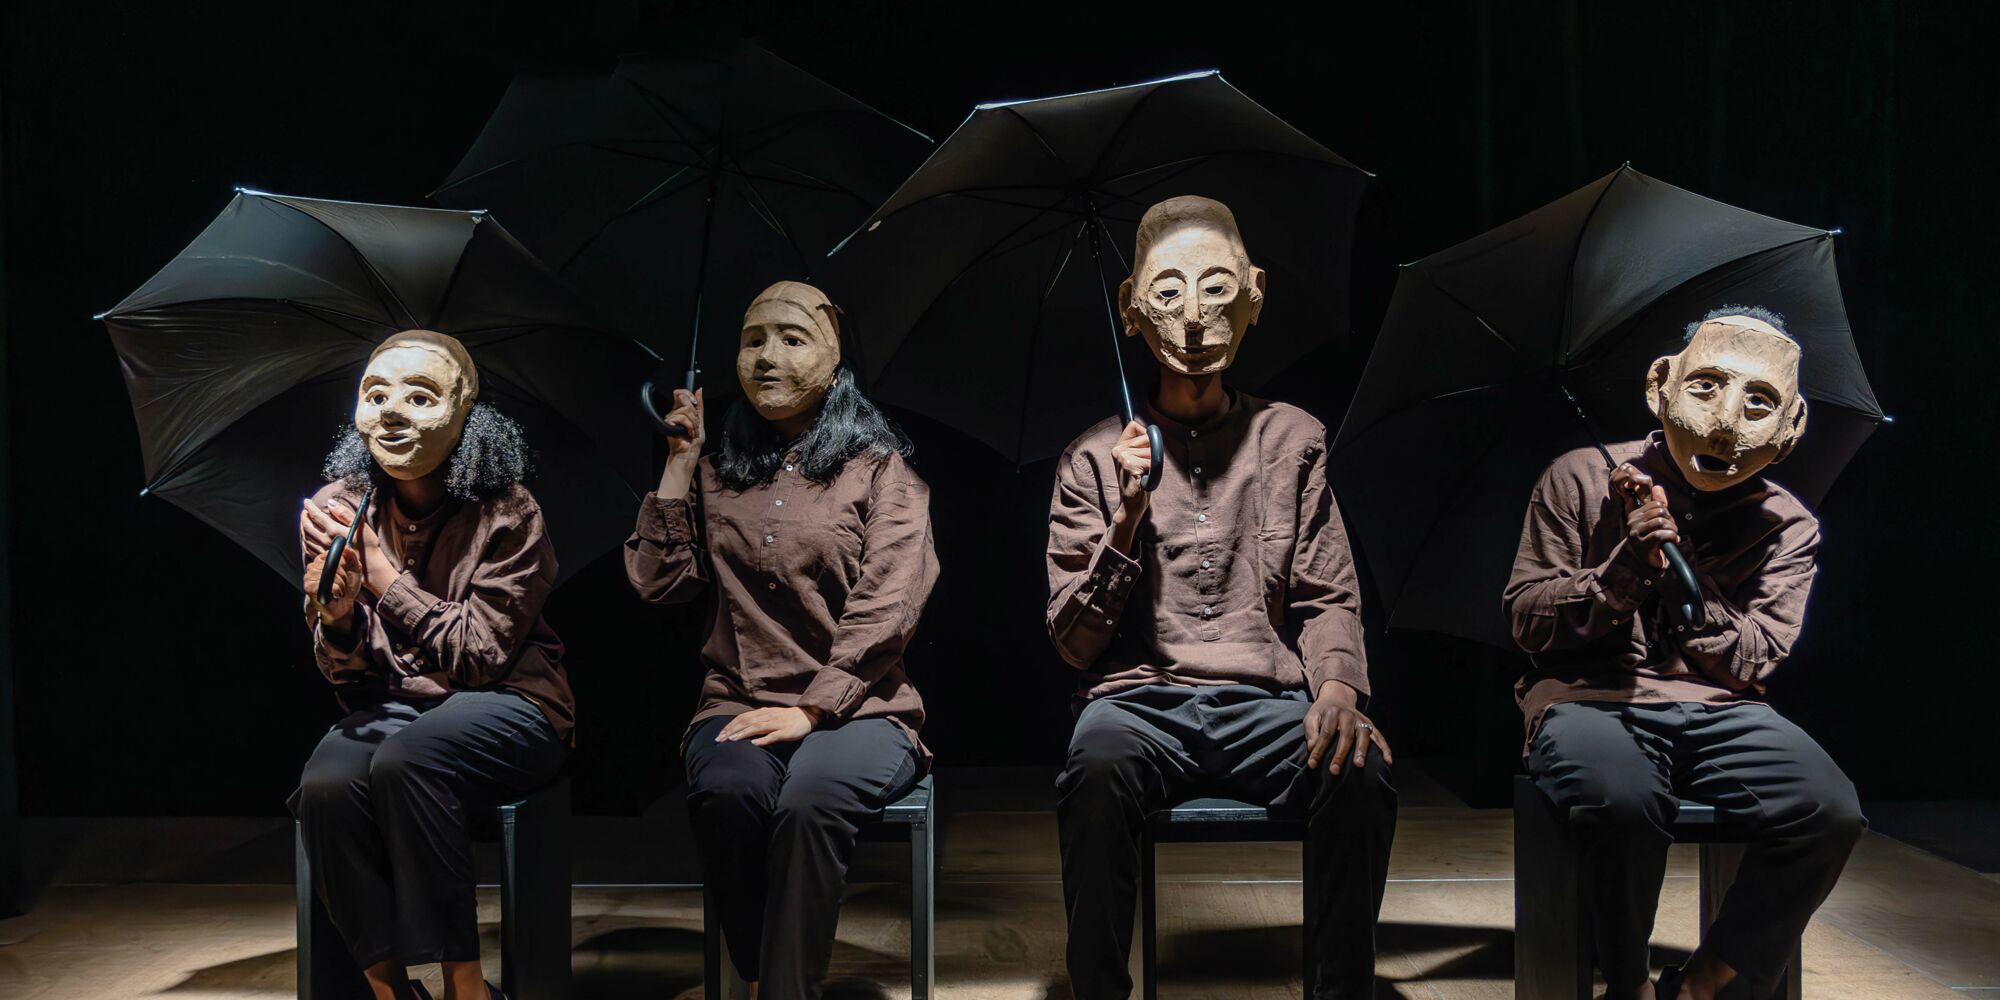 Hier sieht man vier Personen mit braunen Hemden und Masken, die ihre Gesichter komplett verdecken, nebeneinander auf Stühlen sitzen und einen jeweils einen schwarzen Regenschirm halten.